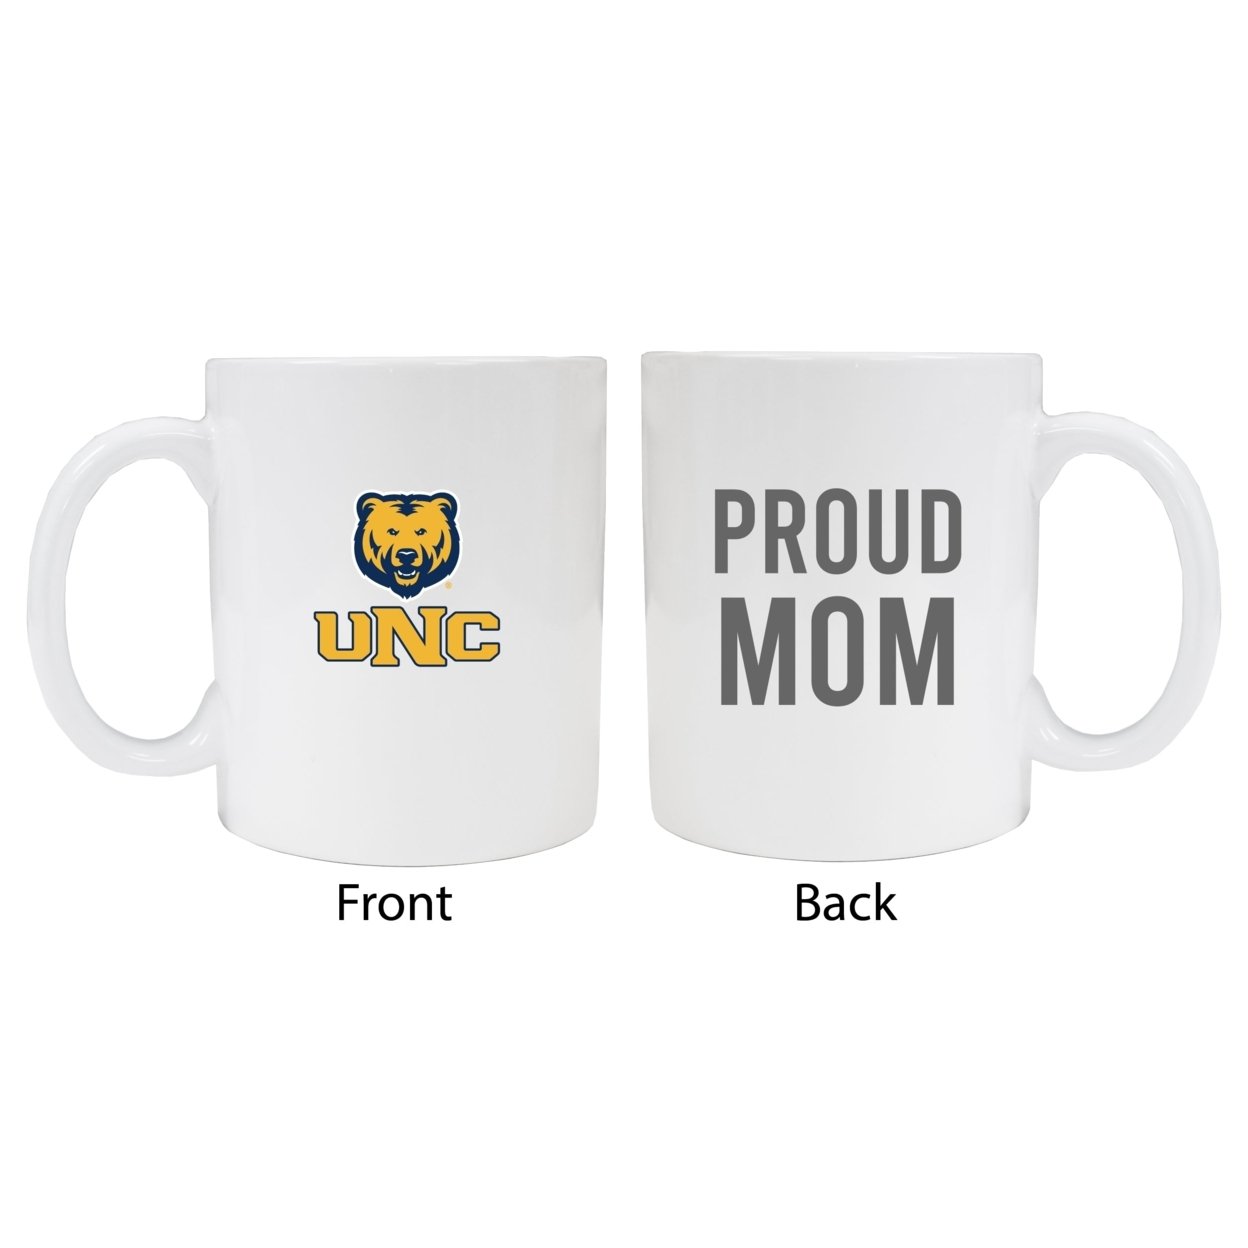 Northern Colorado Bears Proud Mom Ceramic Coffee Mug - White (2 Pack)